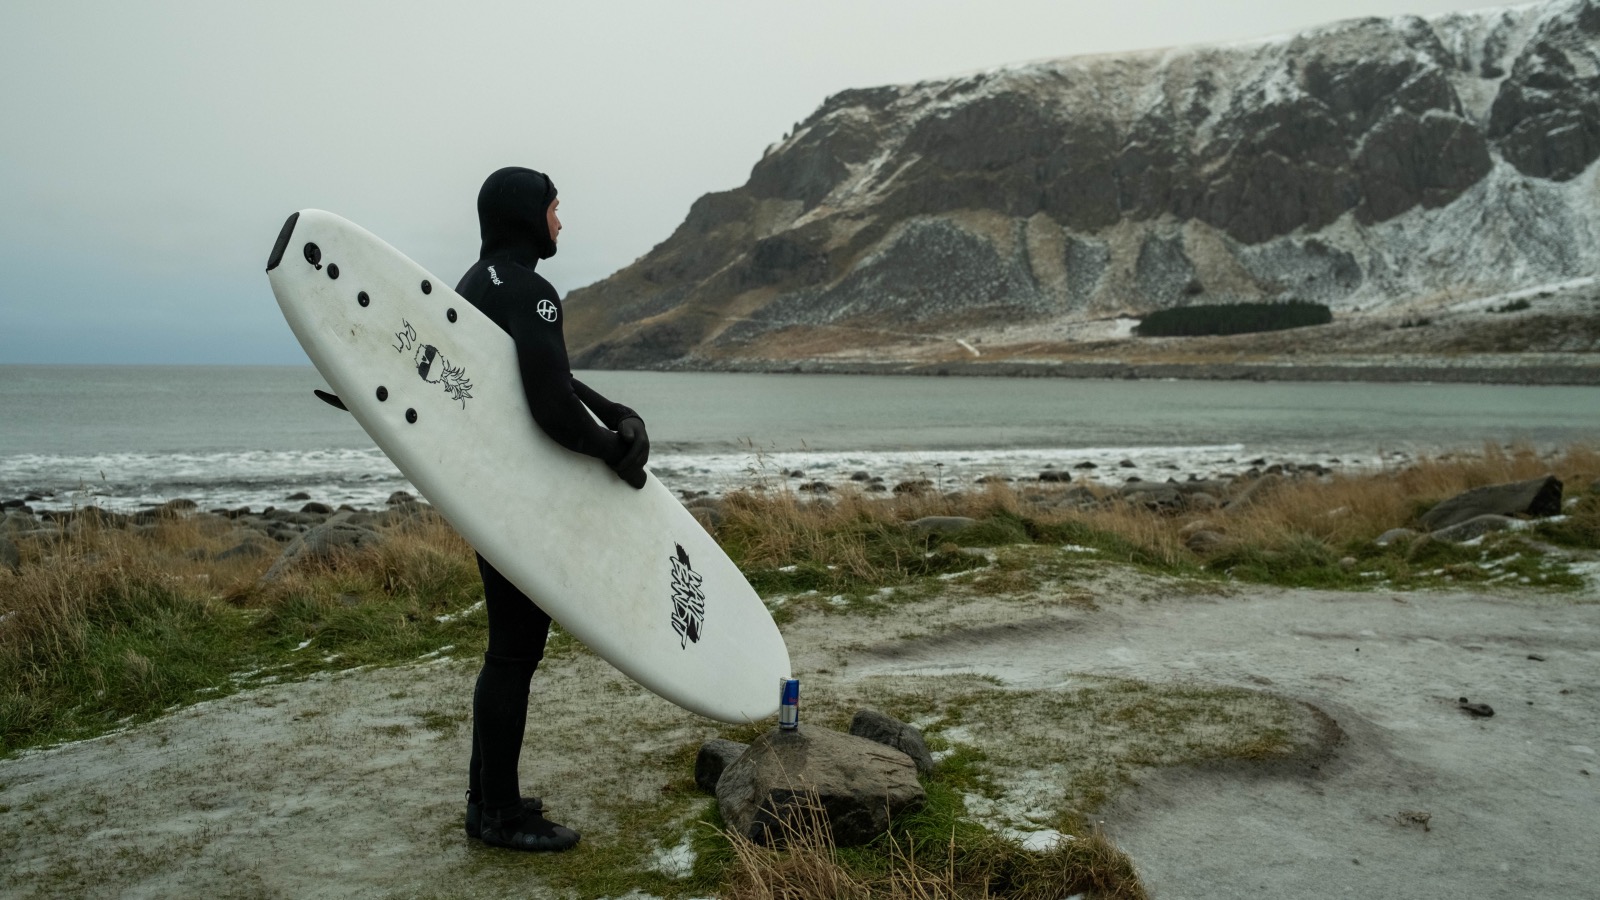 surfer Ben Gravy 7 Seas in 7 days surfing trip